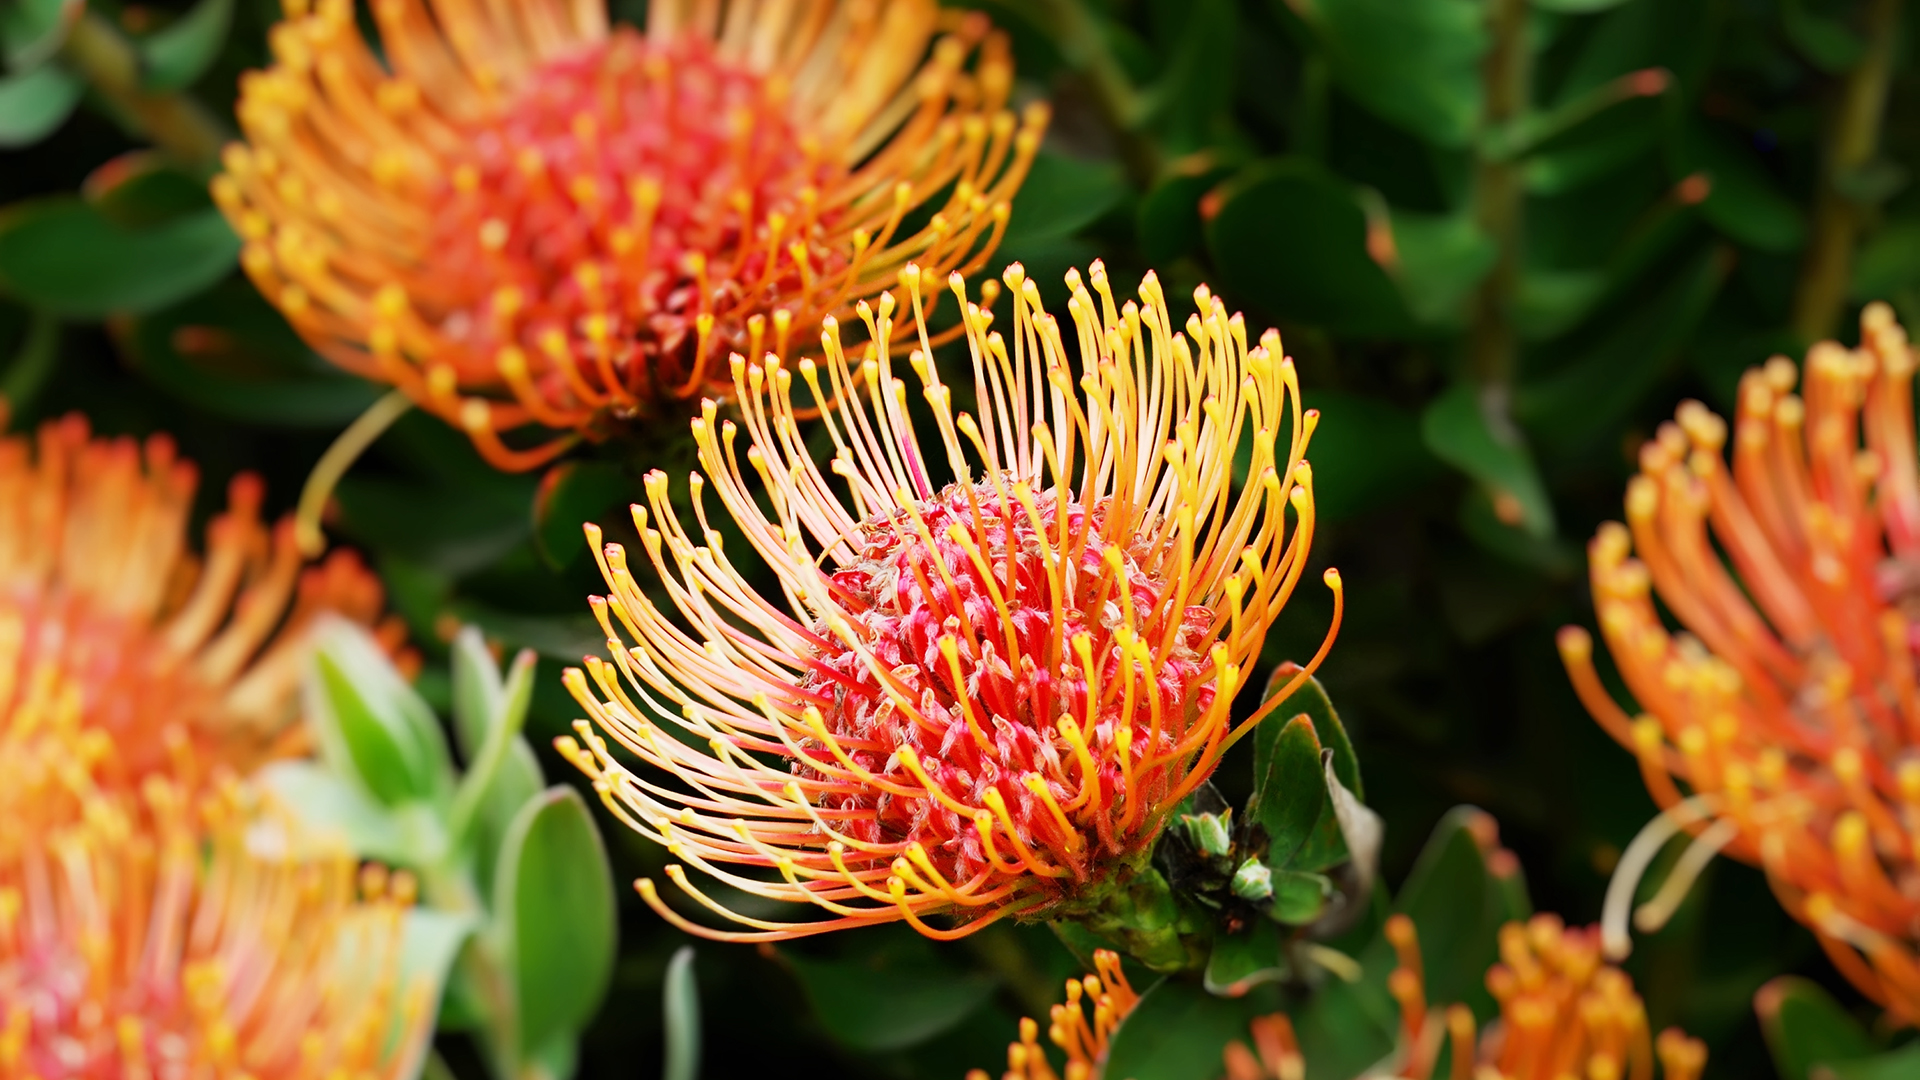 Protea flower photos